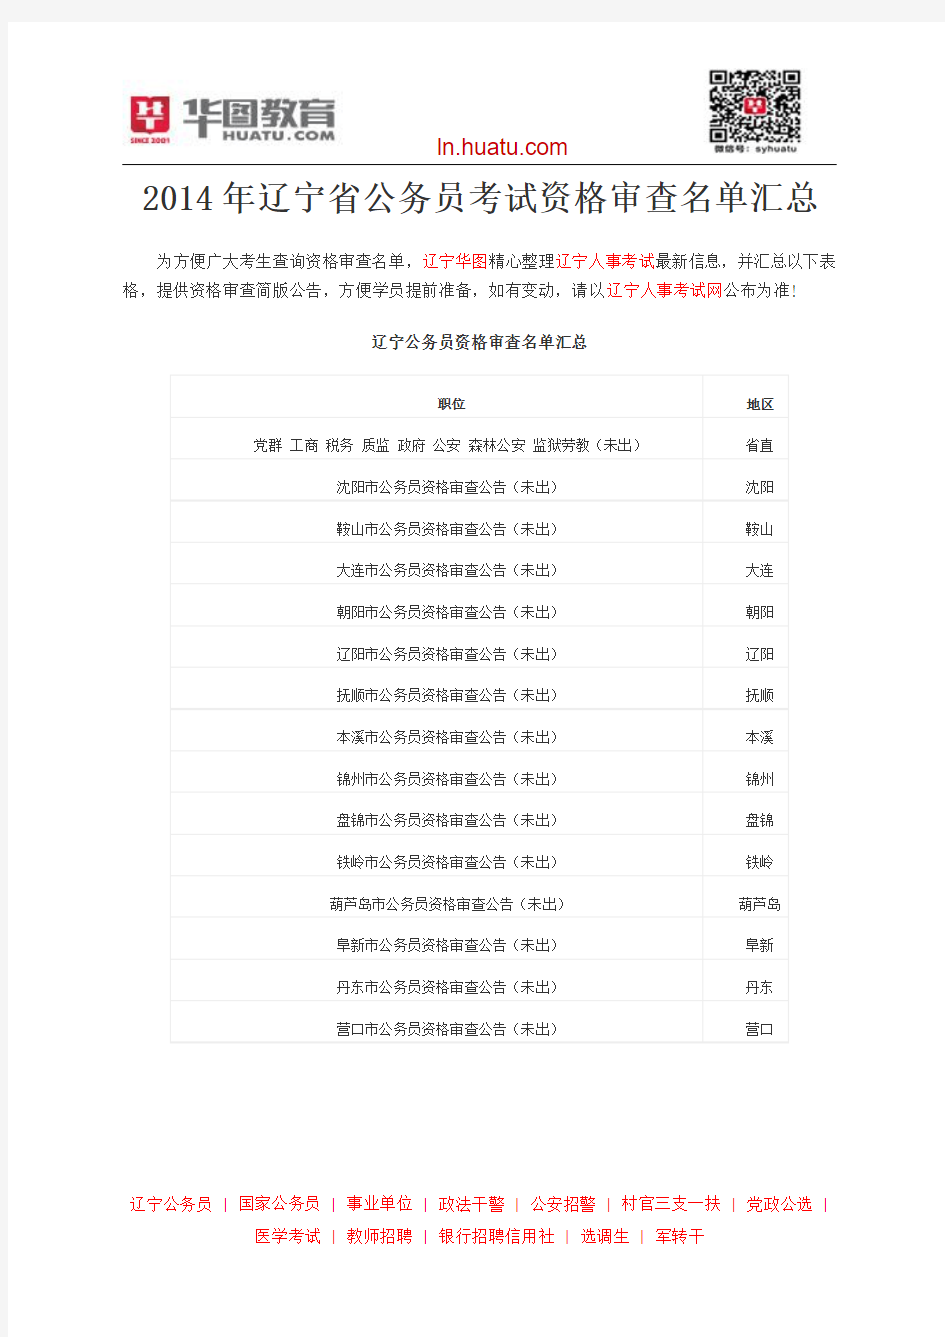 2014年辽宁省公务员考试资格审查名单汇总